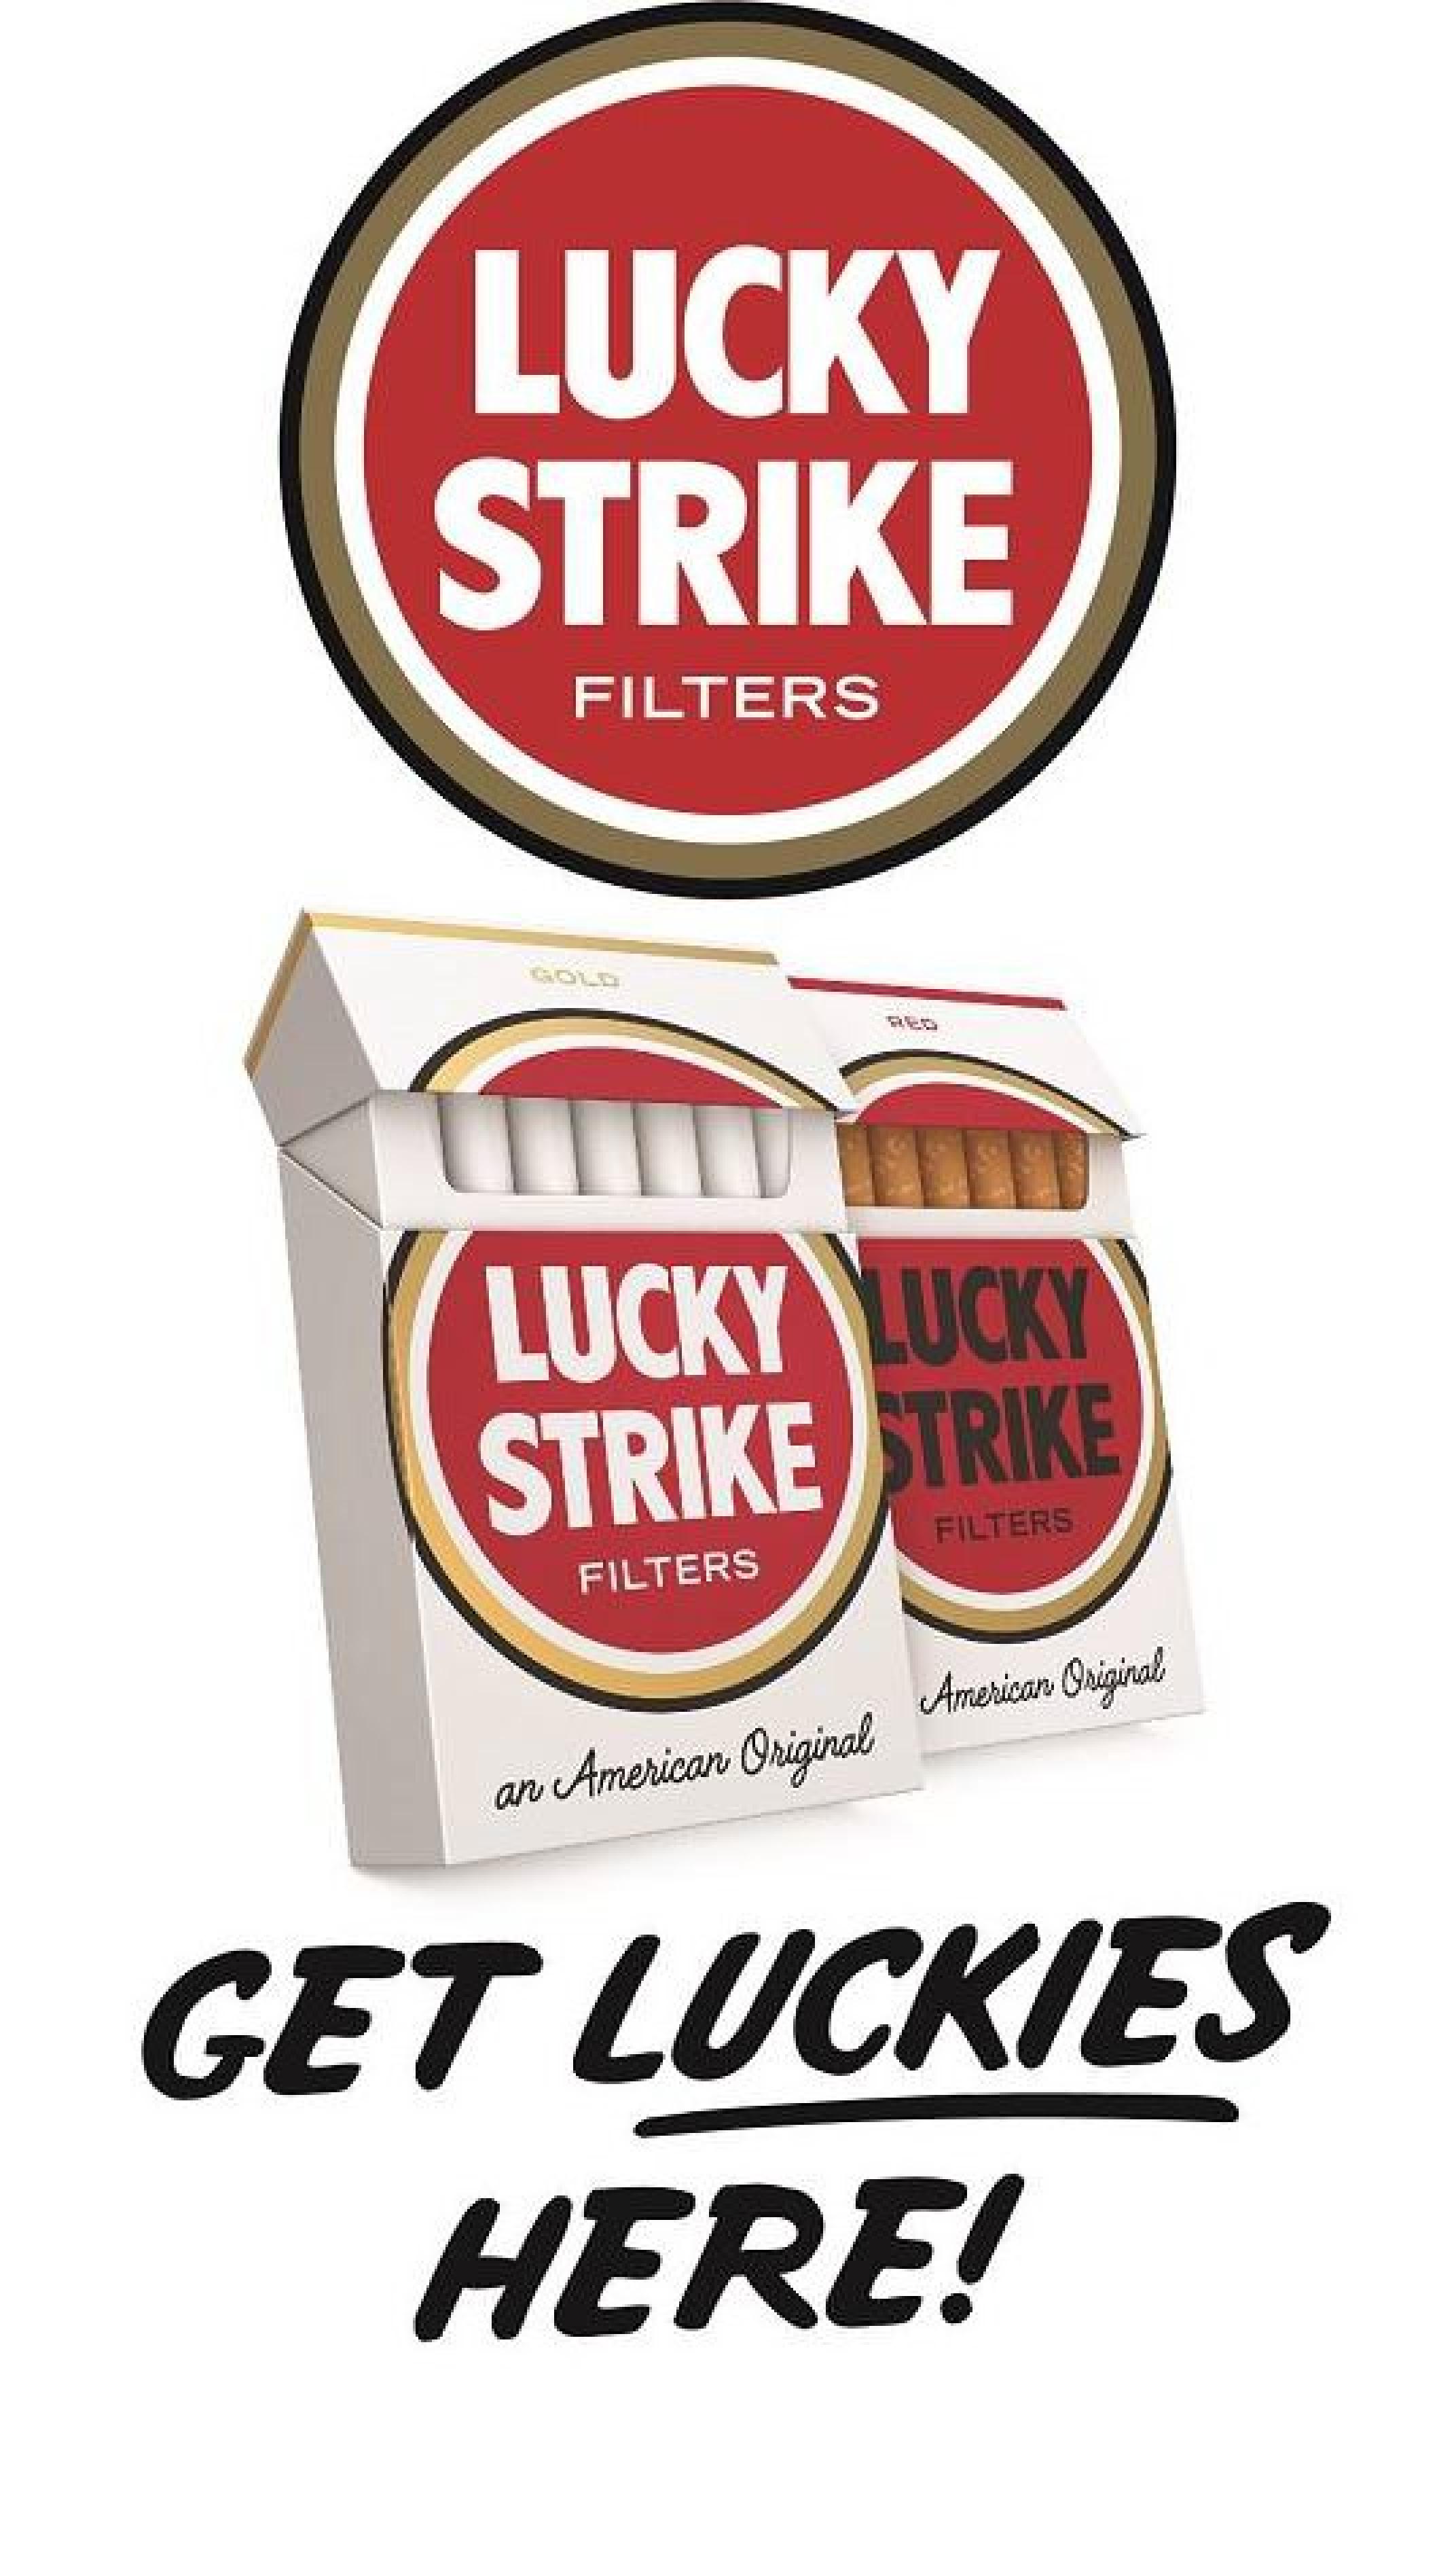 Lucky Strike original sign